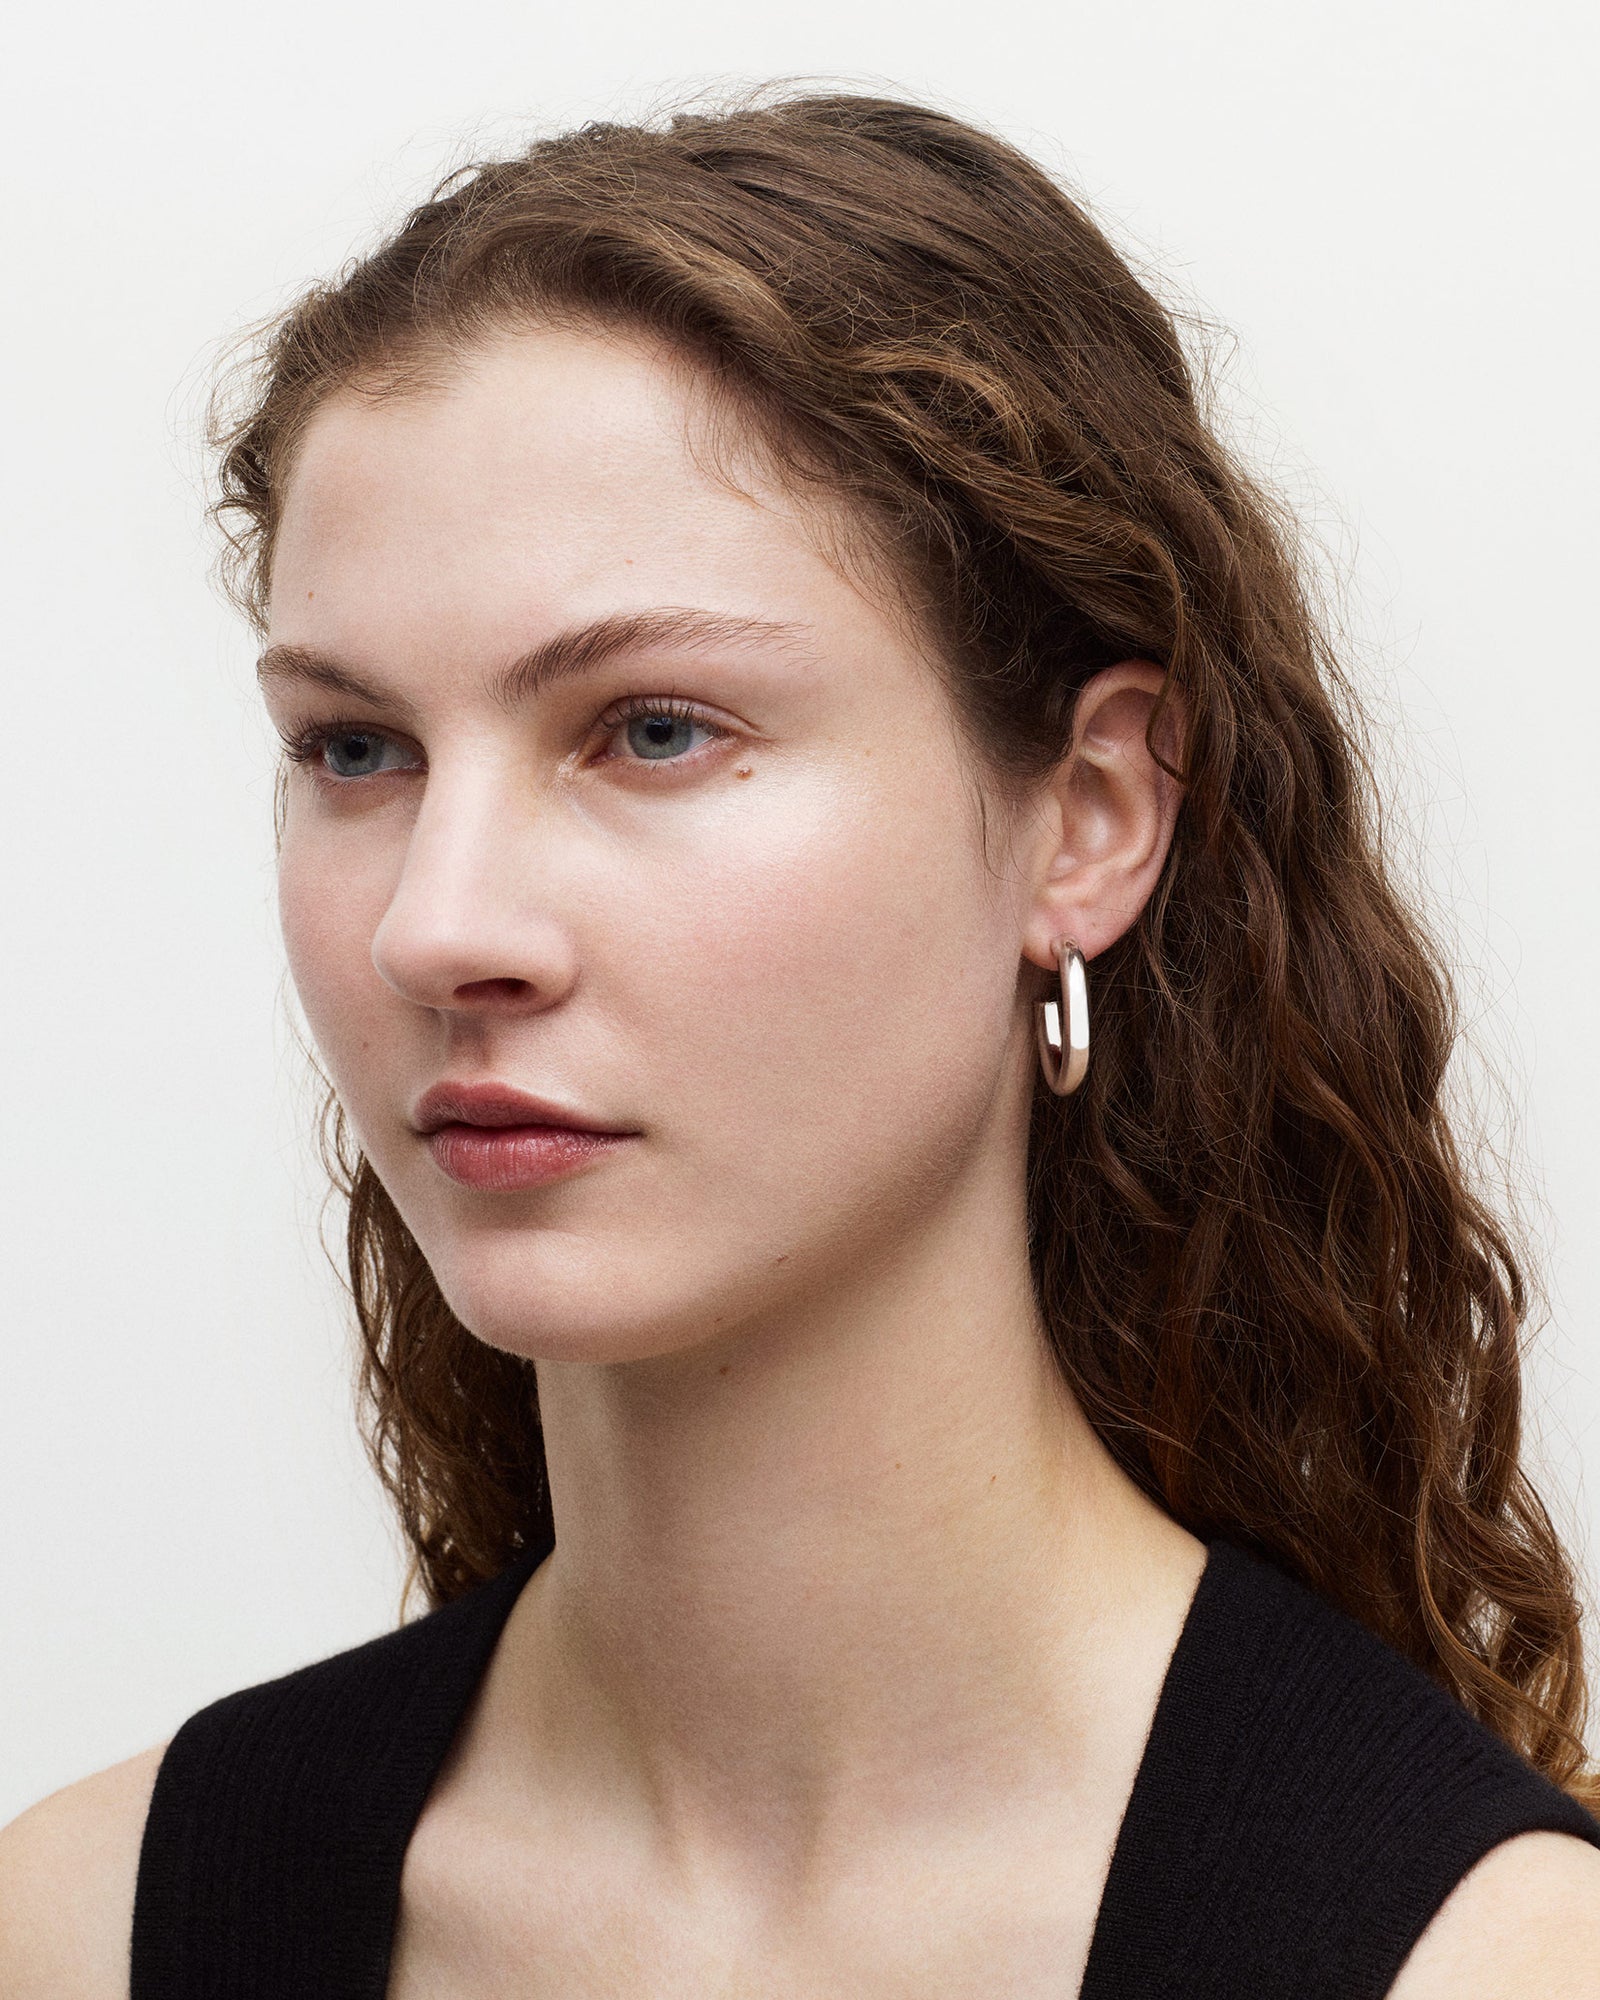 MACHETE Model wearing silver 1" perfect hoop earrings